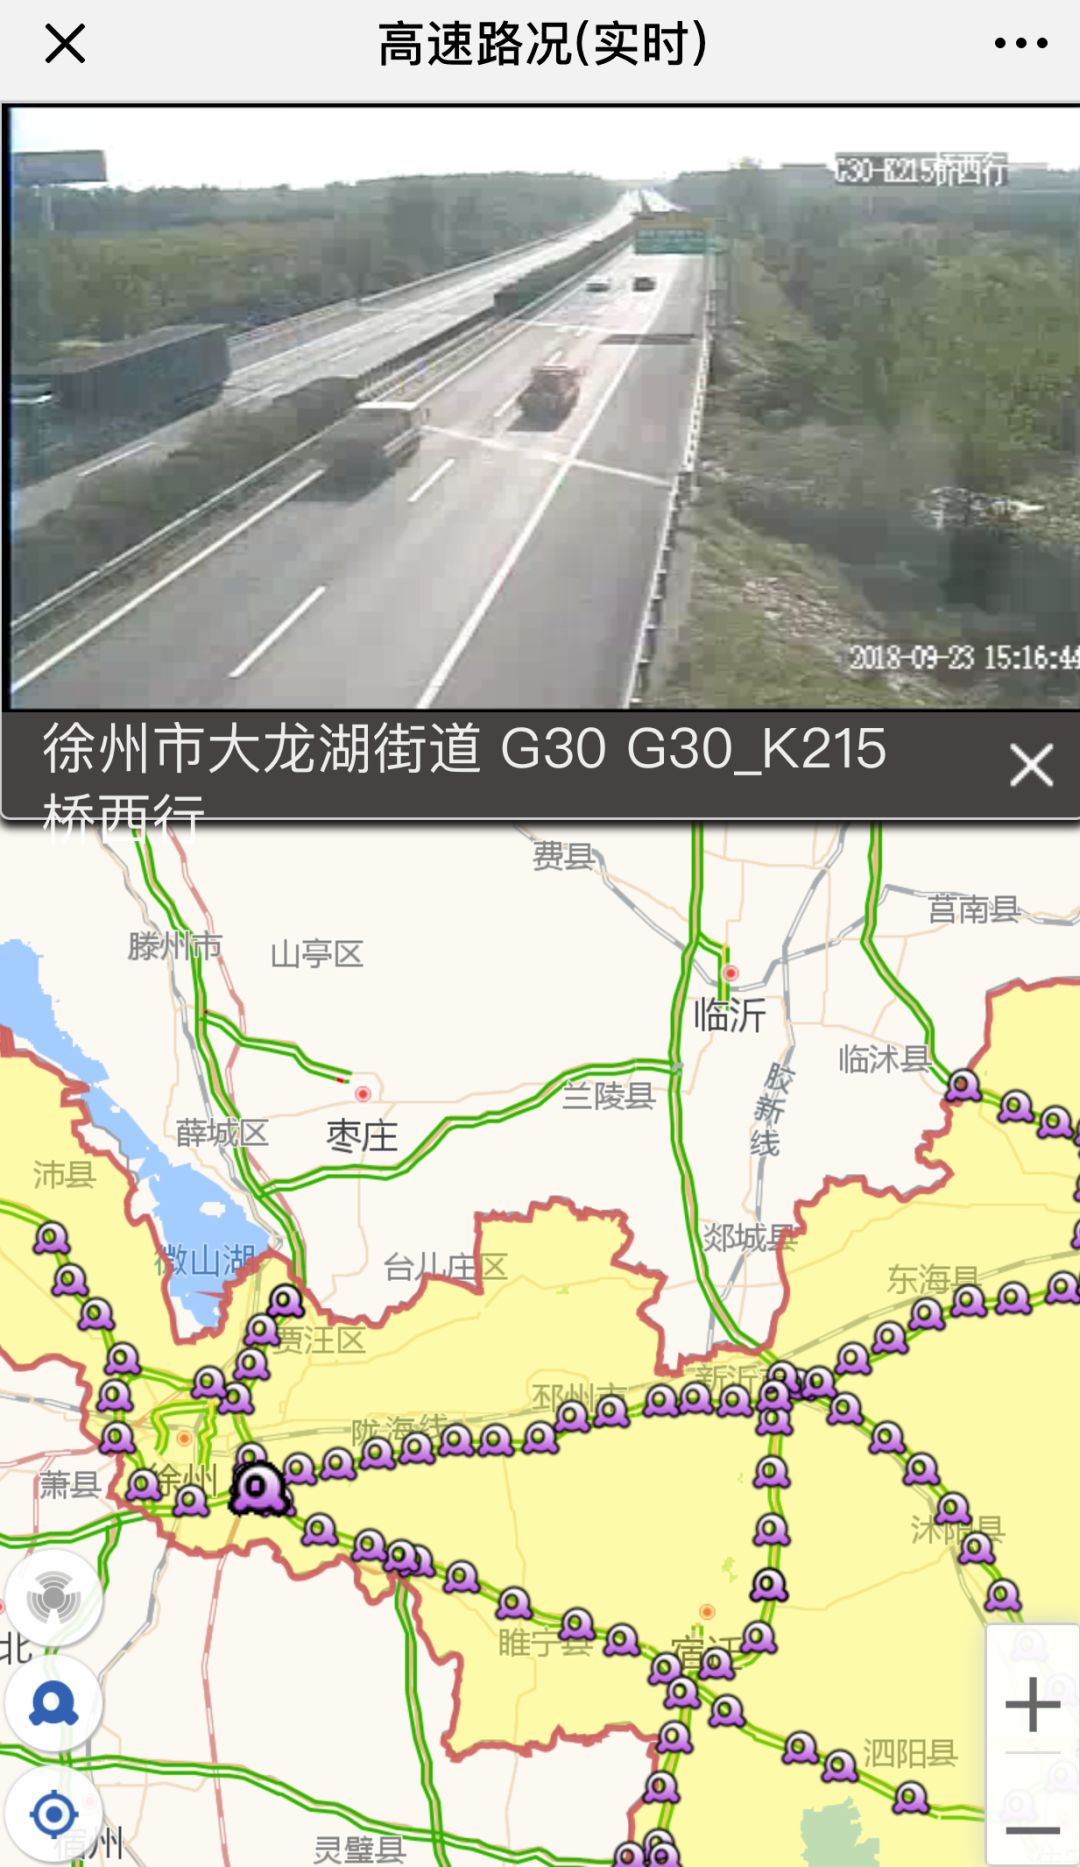 江苏高速实时路况视频上线,可提前了解路况避